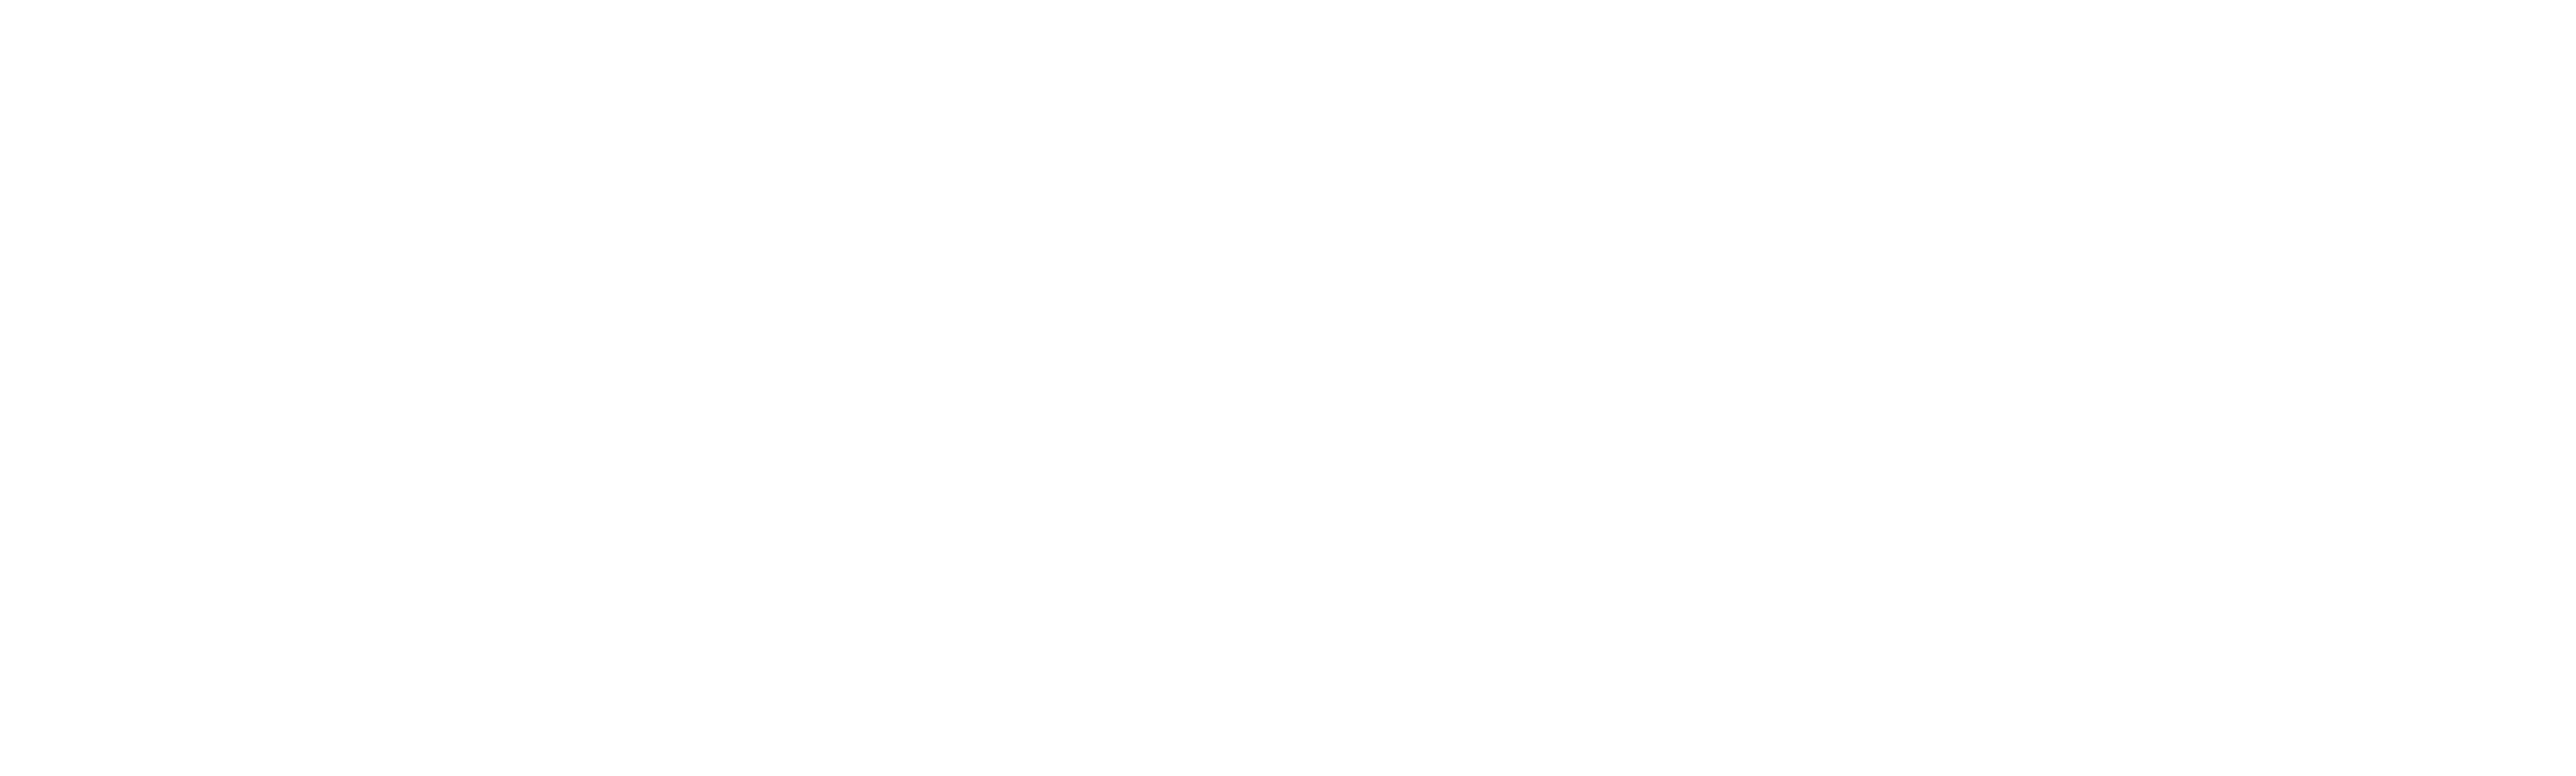 Tomasz Burzynski Photography Logo